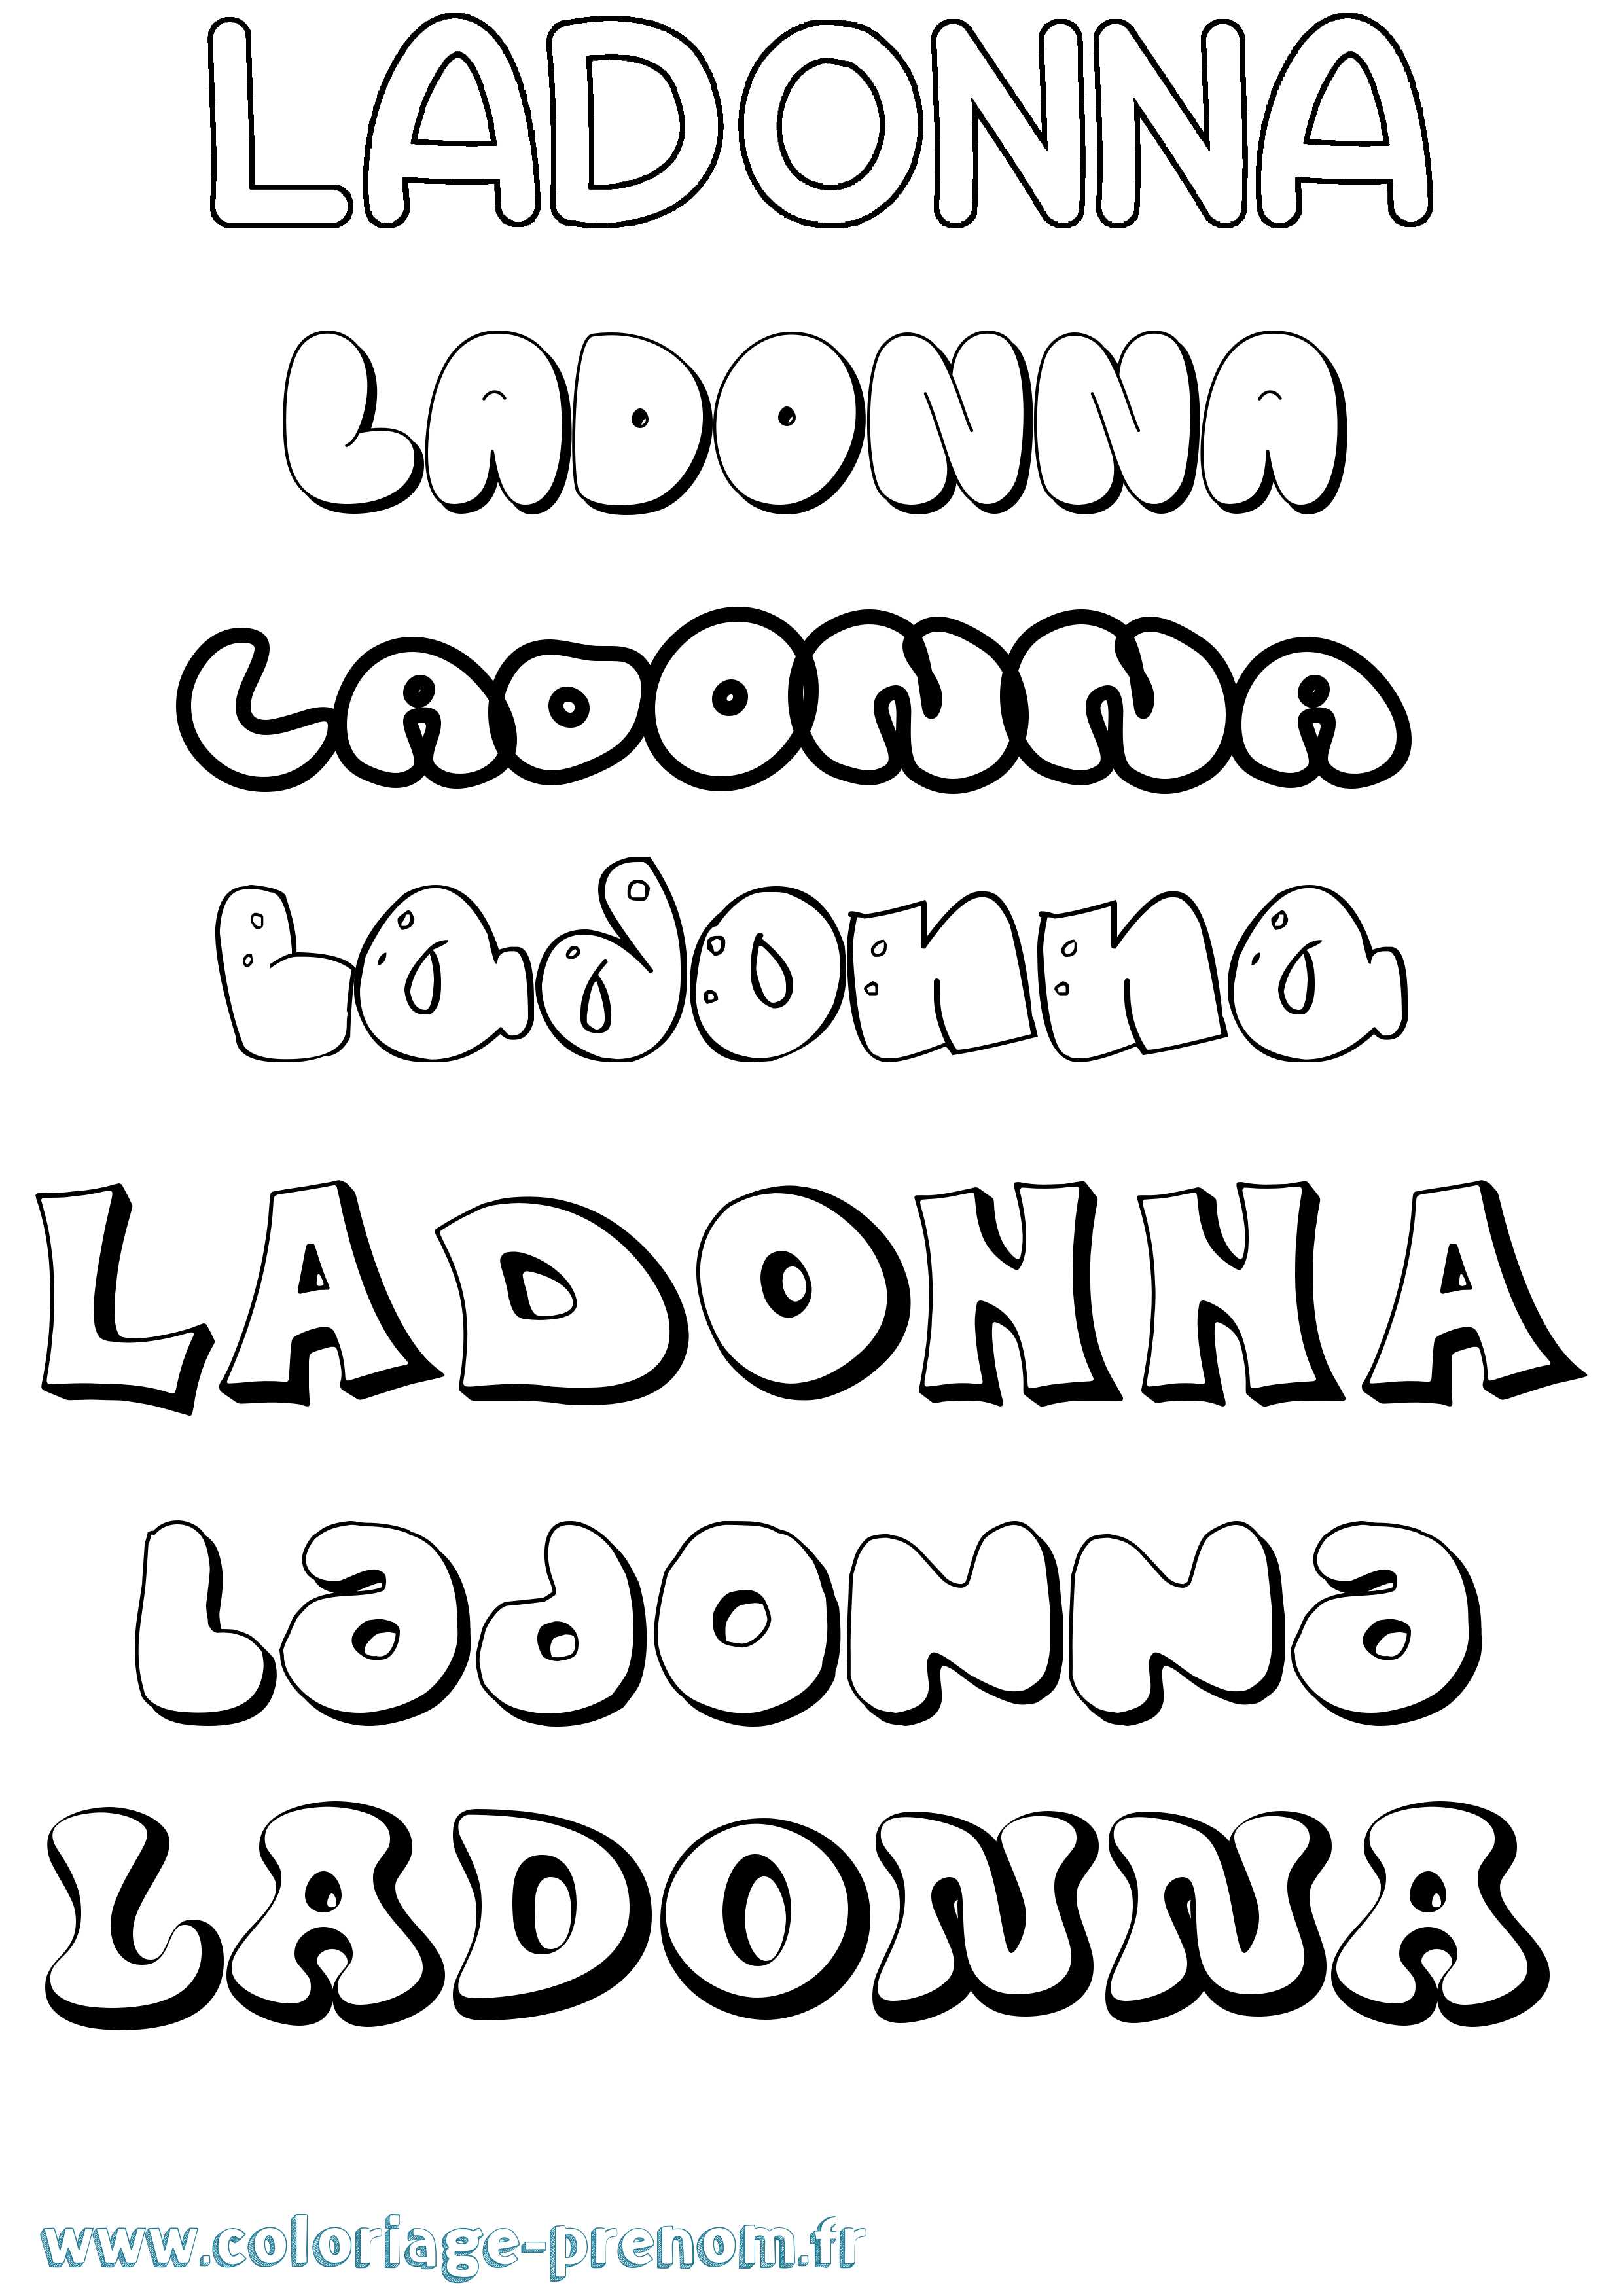 Coloriage prénom Ladonna Bubble